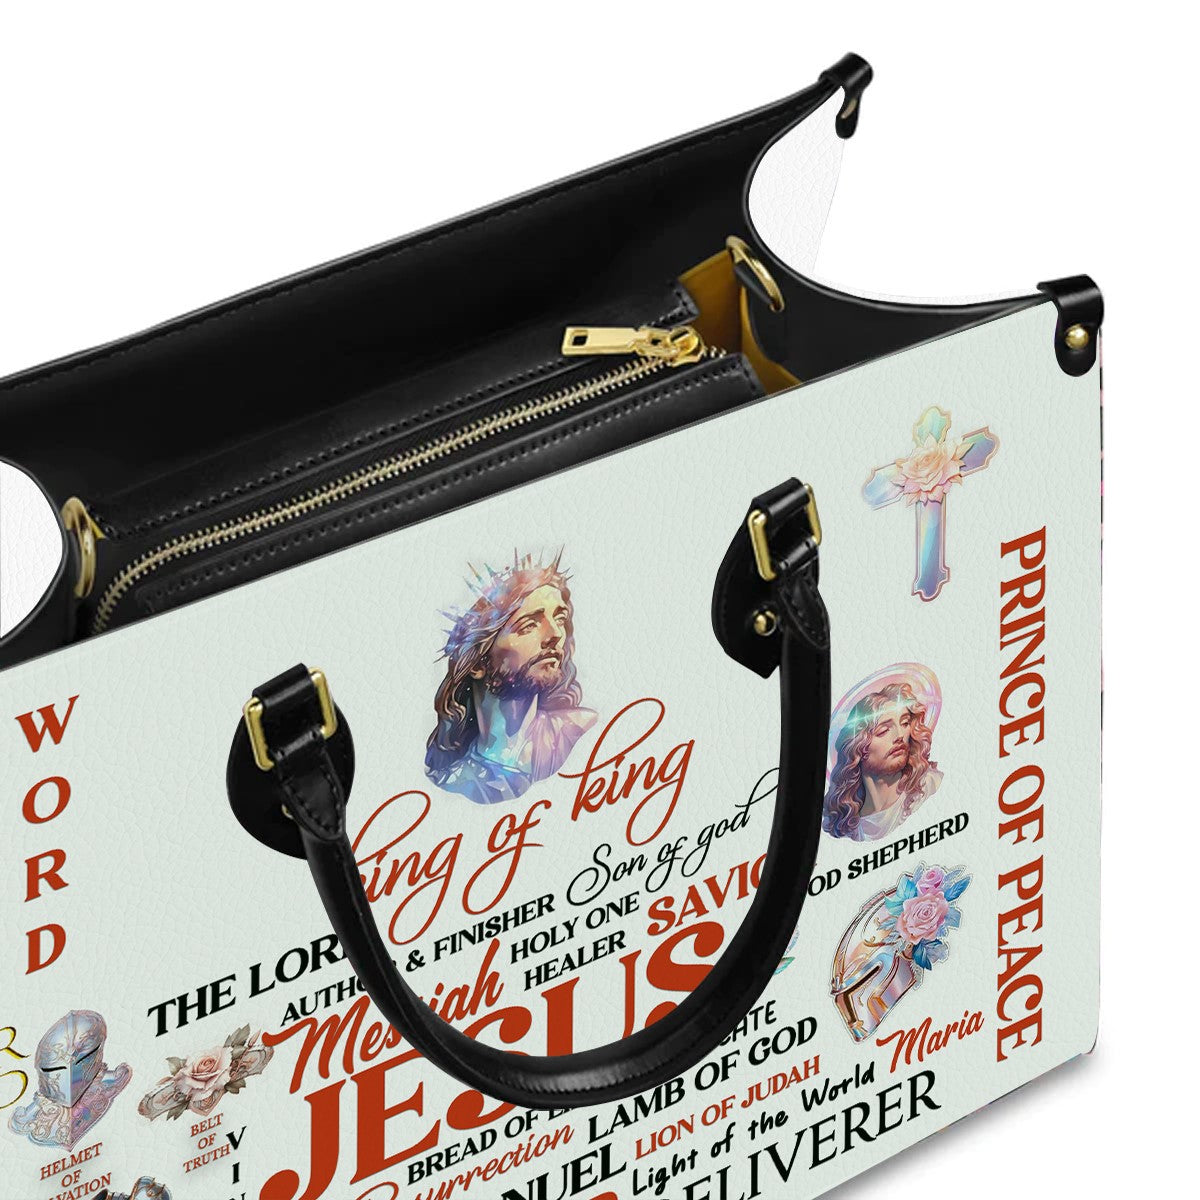 Christianartbag Handbags, Jesus The Lord King Of King Leather Handbag, Handbag Design, Personalized Leather Handbag, Gifts for Women, CABLTB01051123. - Christian Art Bag